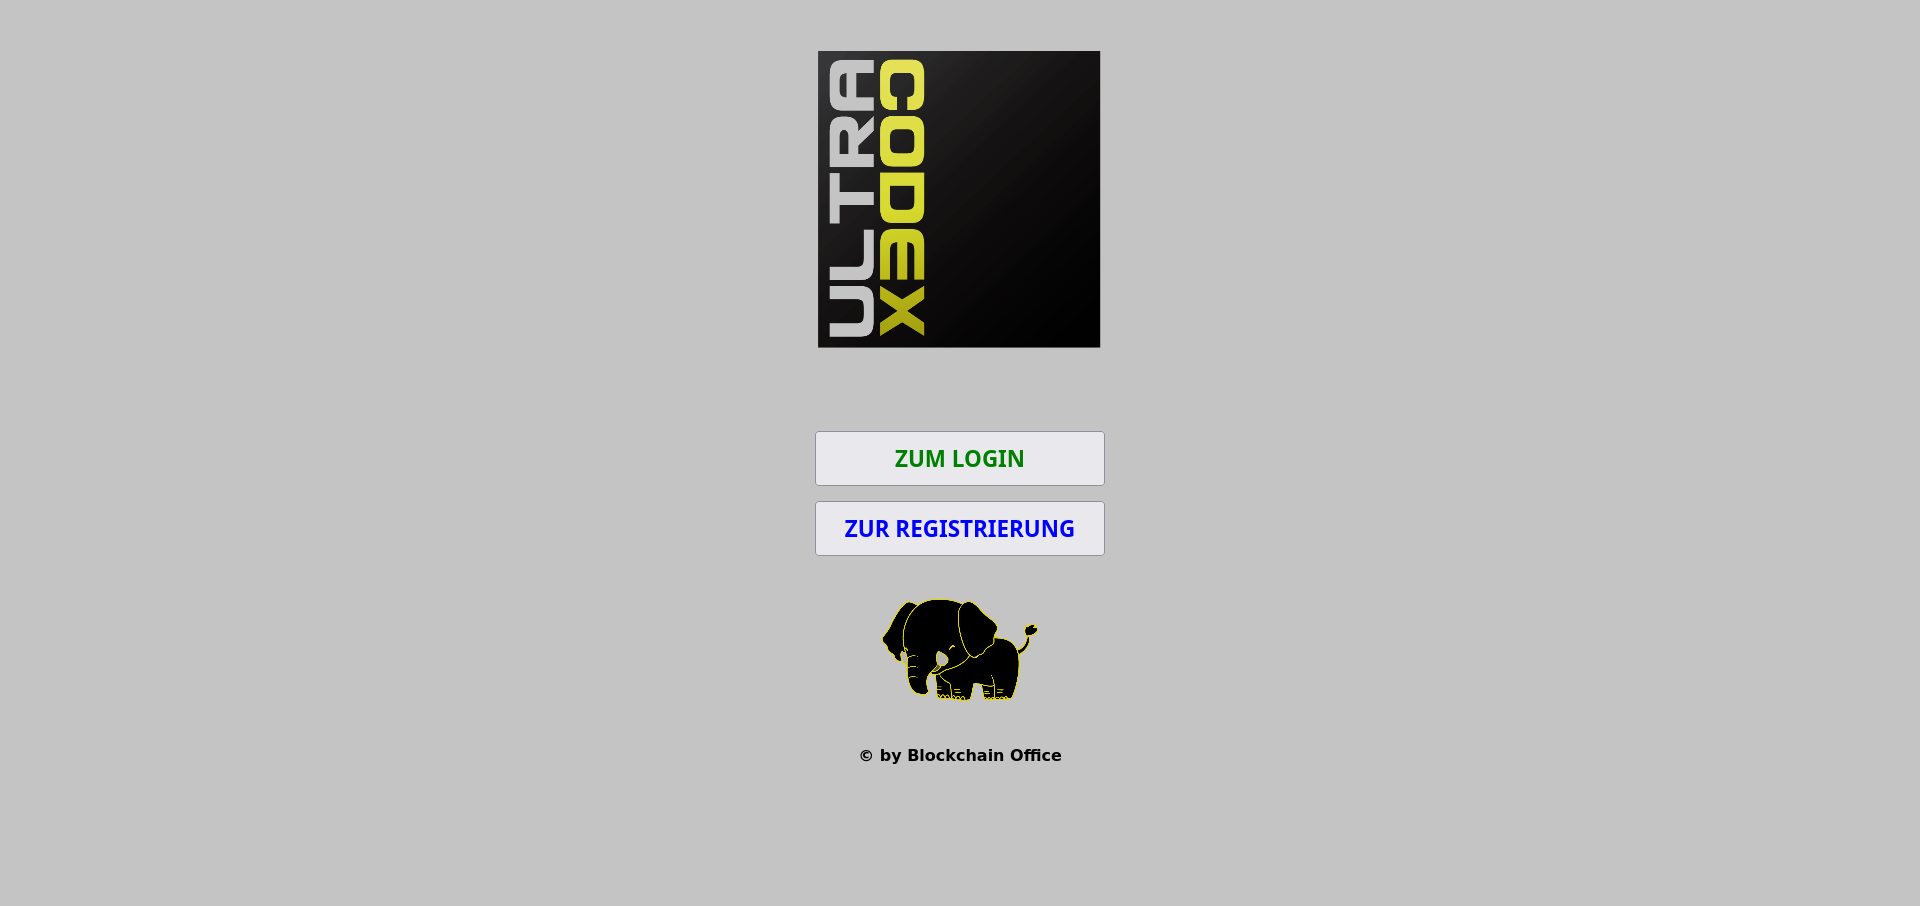 Desktop Login & Register UltraCodex